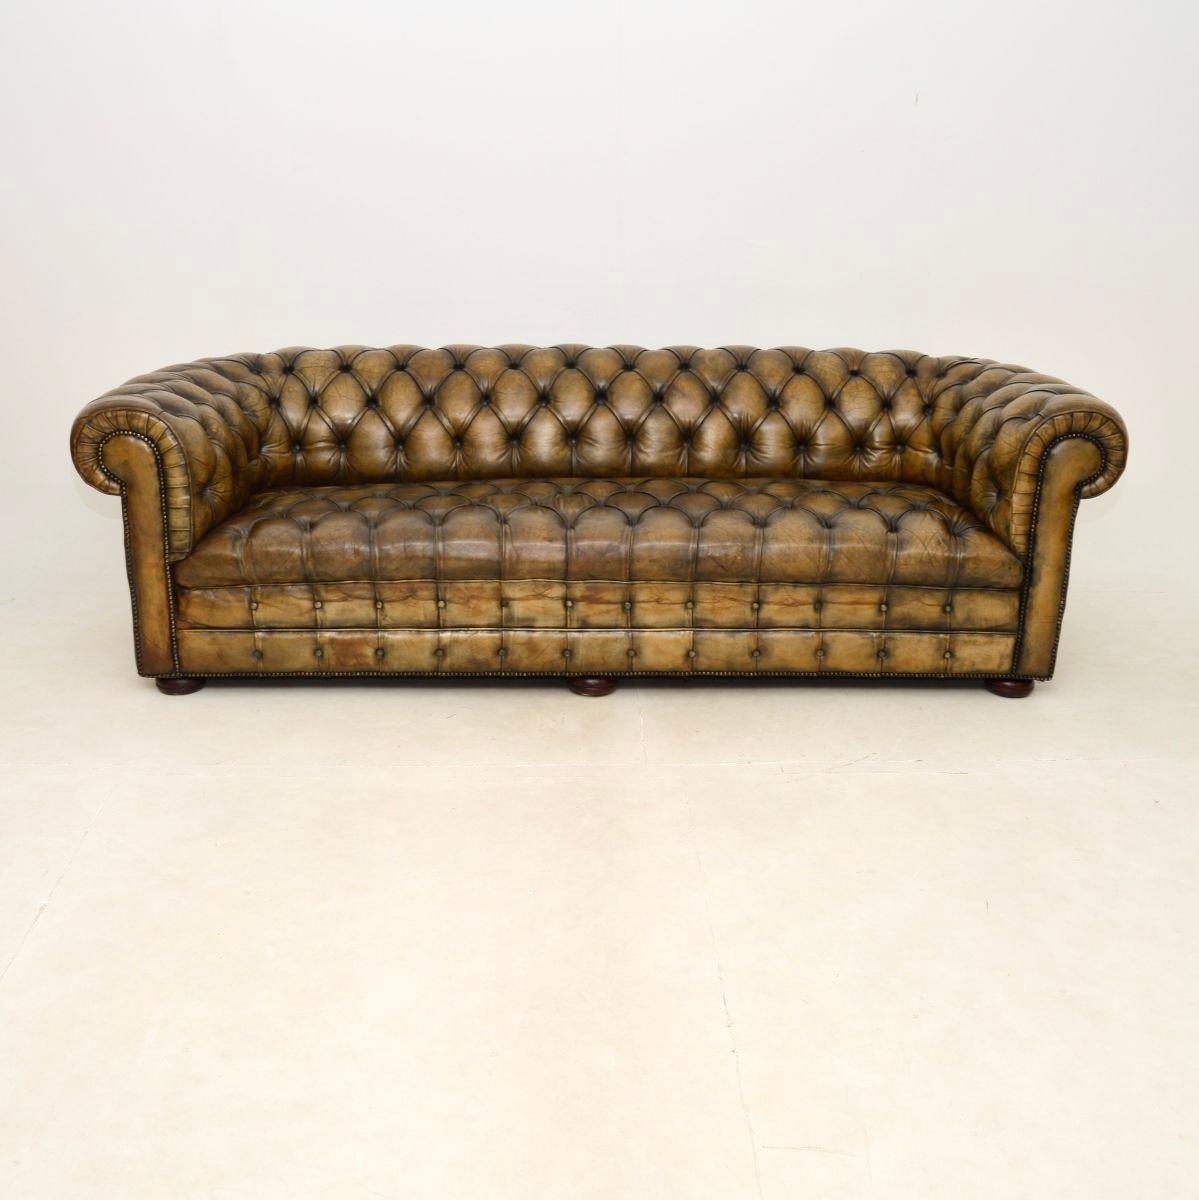 Un grand et très impressionnant canapé Chesterfield ancien en cuir. Il a été fabriqué en Angleterre et nous le daterions des années 1880-1890.

La qualité est exceptionnelle, il est extrêmement bien fait et confortable. Le cuir profondément boutonné